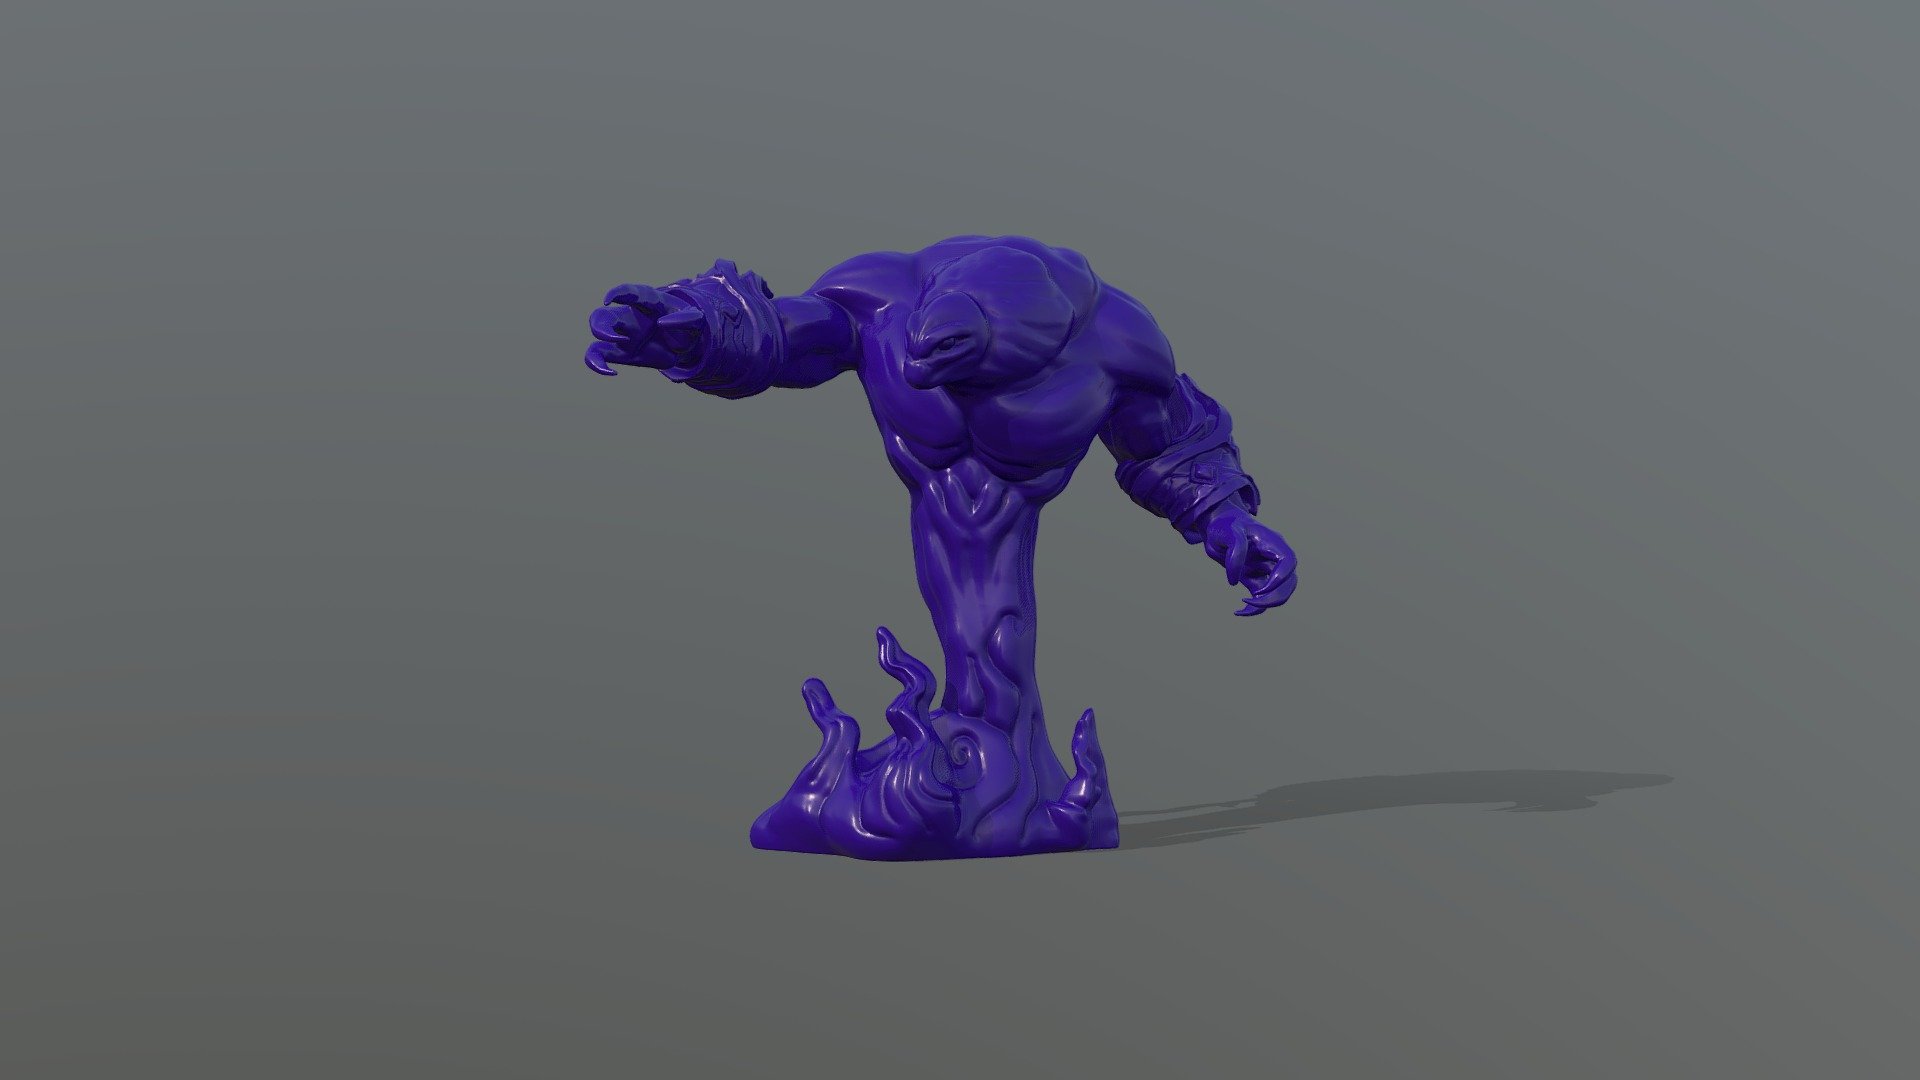 Voidwalker I sculpted - Voidwalker Pose 1 Reach Base 215% - 3D model by bpblewett 3d model